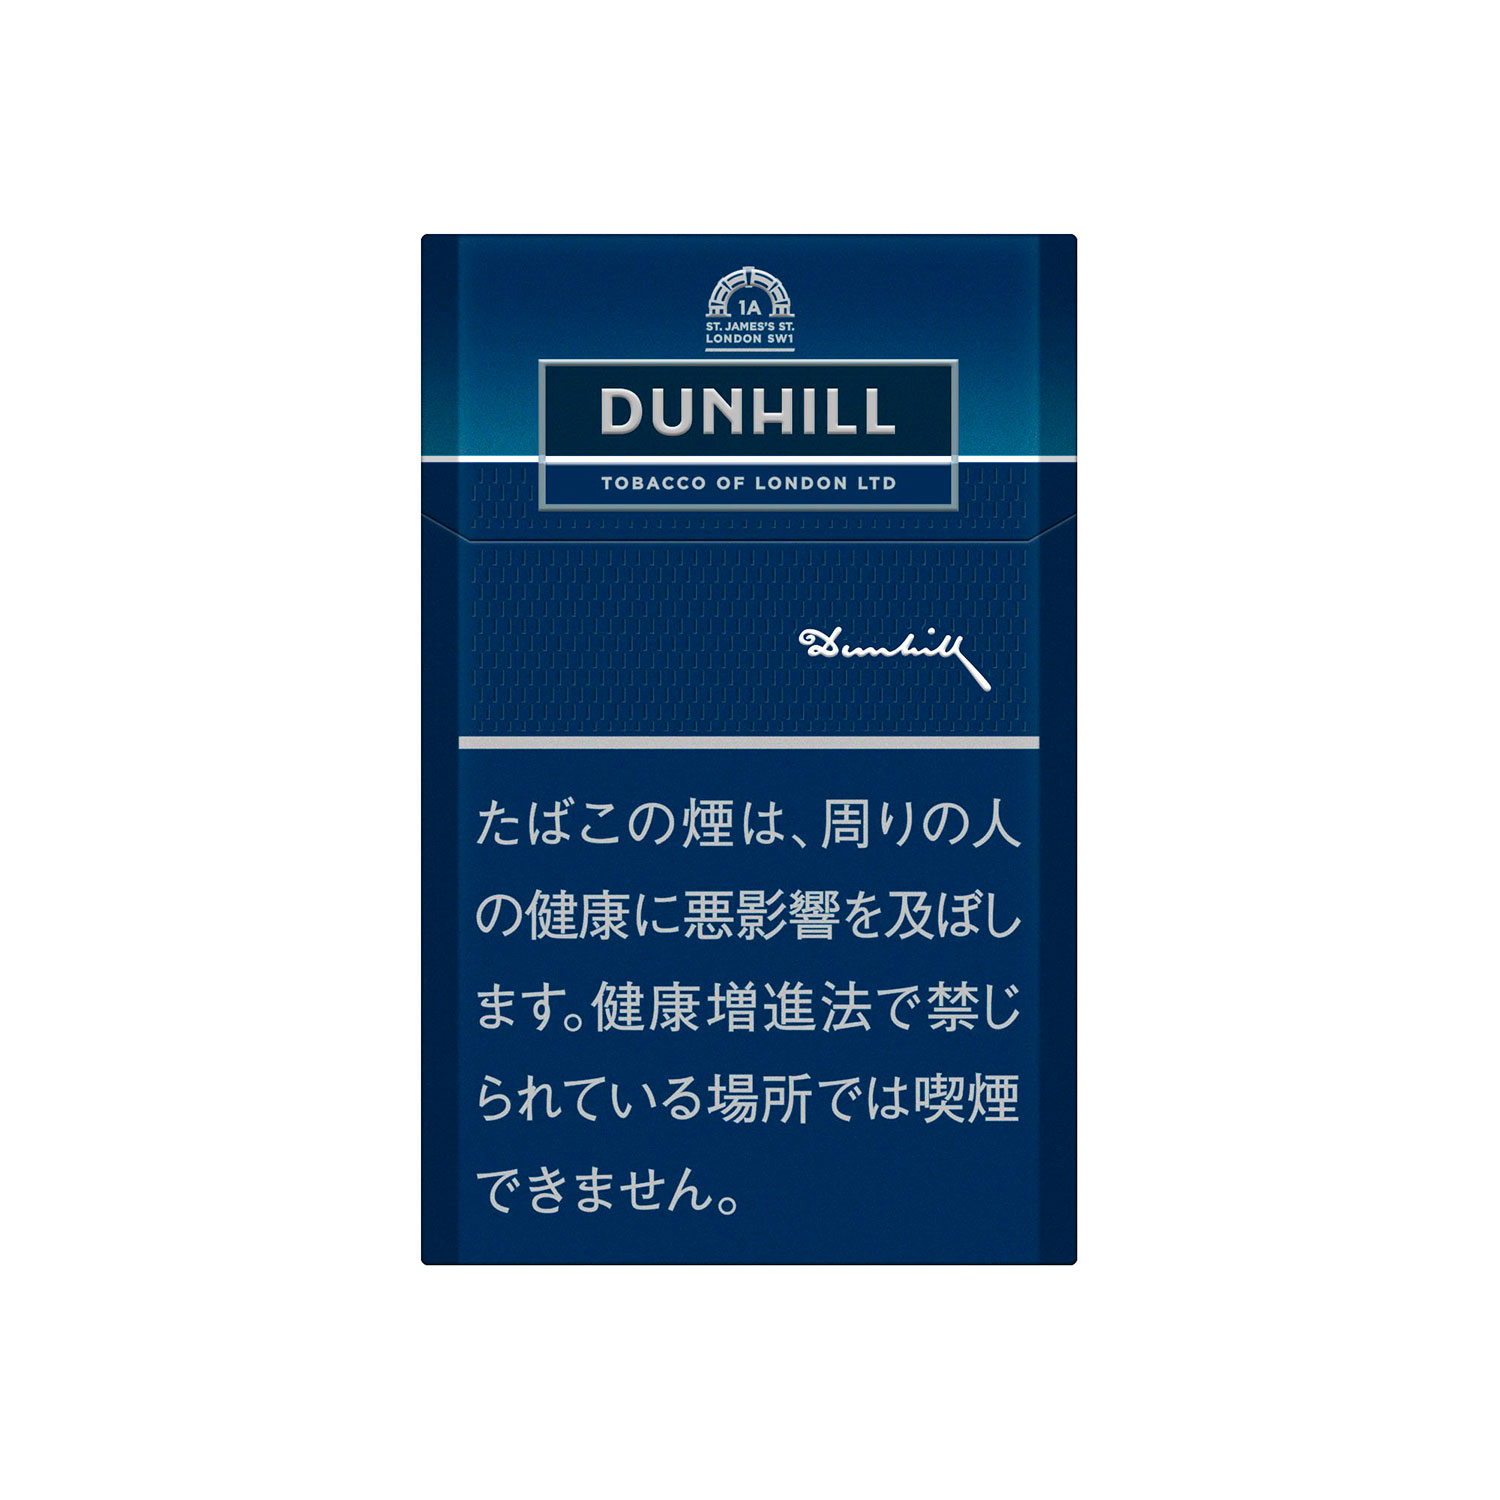 DUNHILL BLUE / Tar:6mg Nicotine:0.6mg